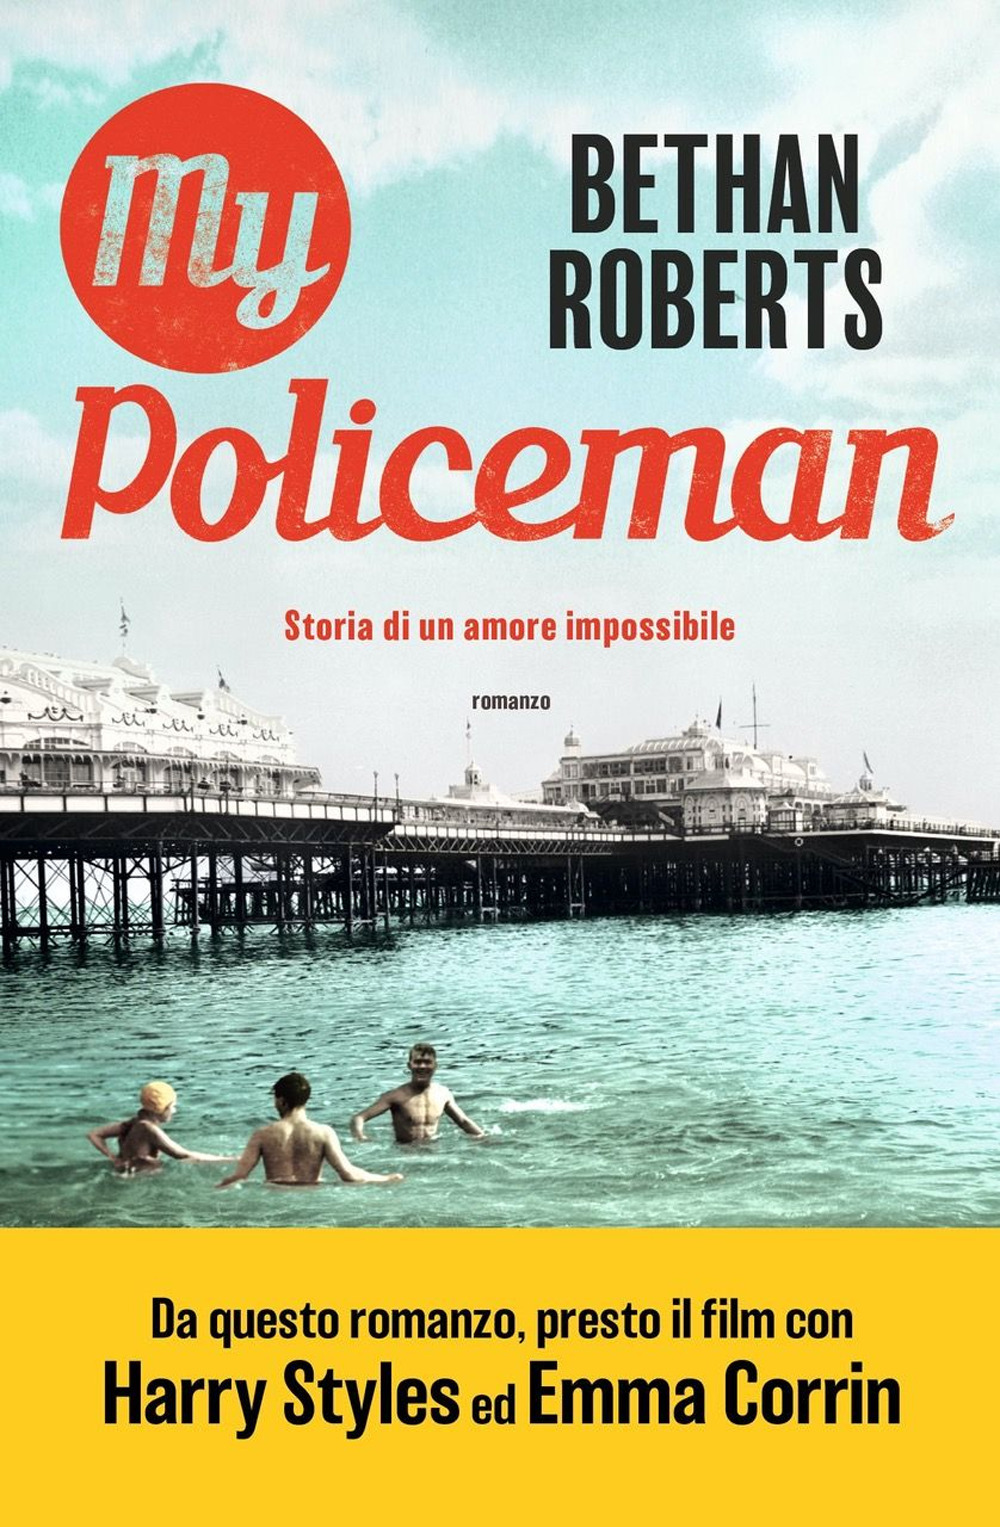 Libri Roberts Bethan - My Policeman. Storia Di Un Amore Impossibile NUOVO SIGILLATO, EDIZIONE DEL 09/11/2021 SUBITO DISPONIBILE